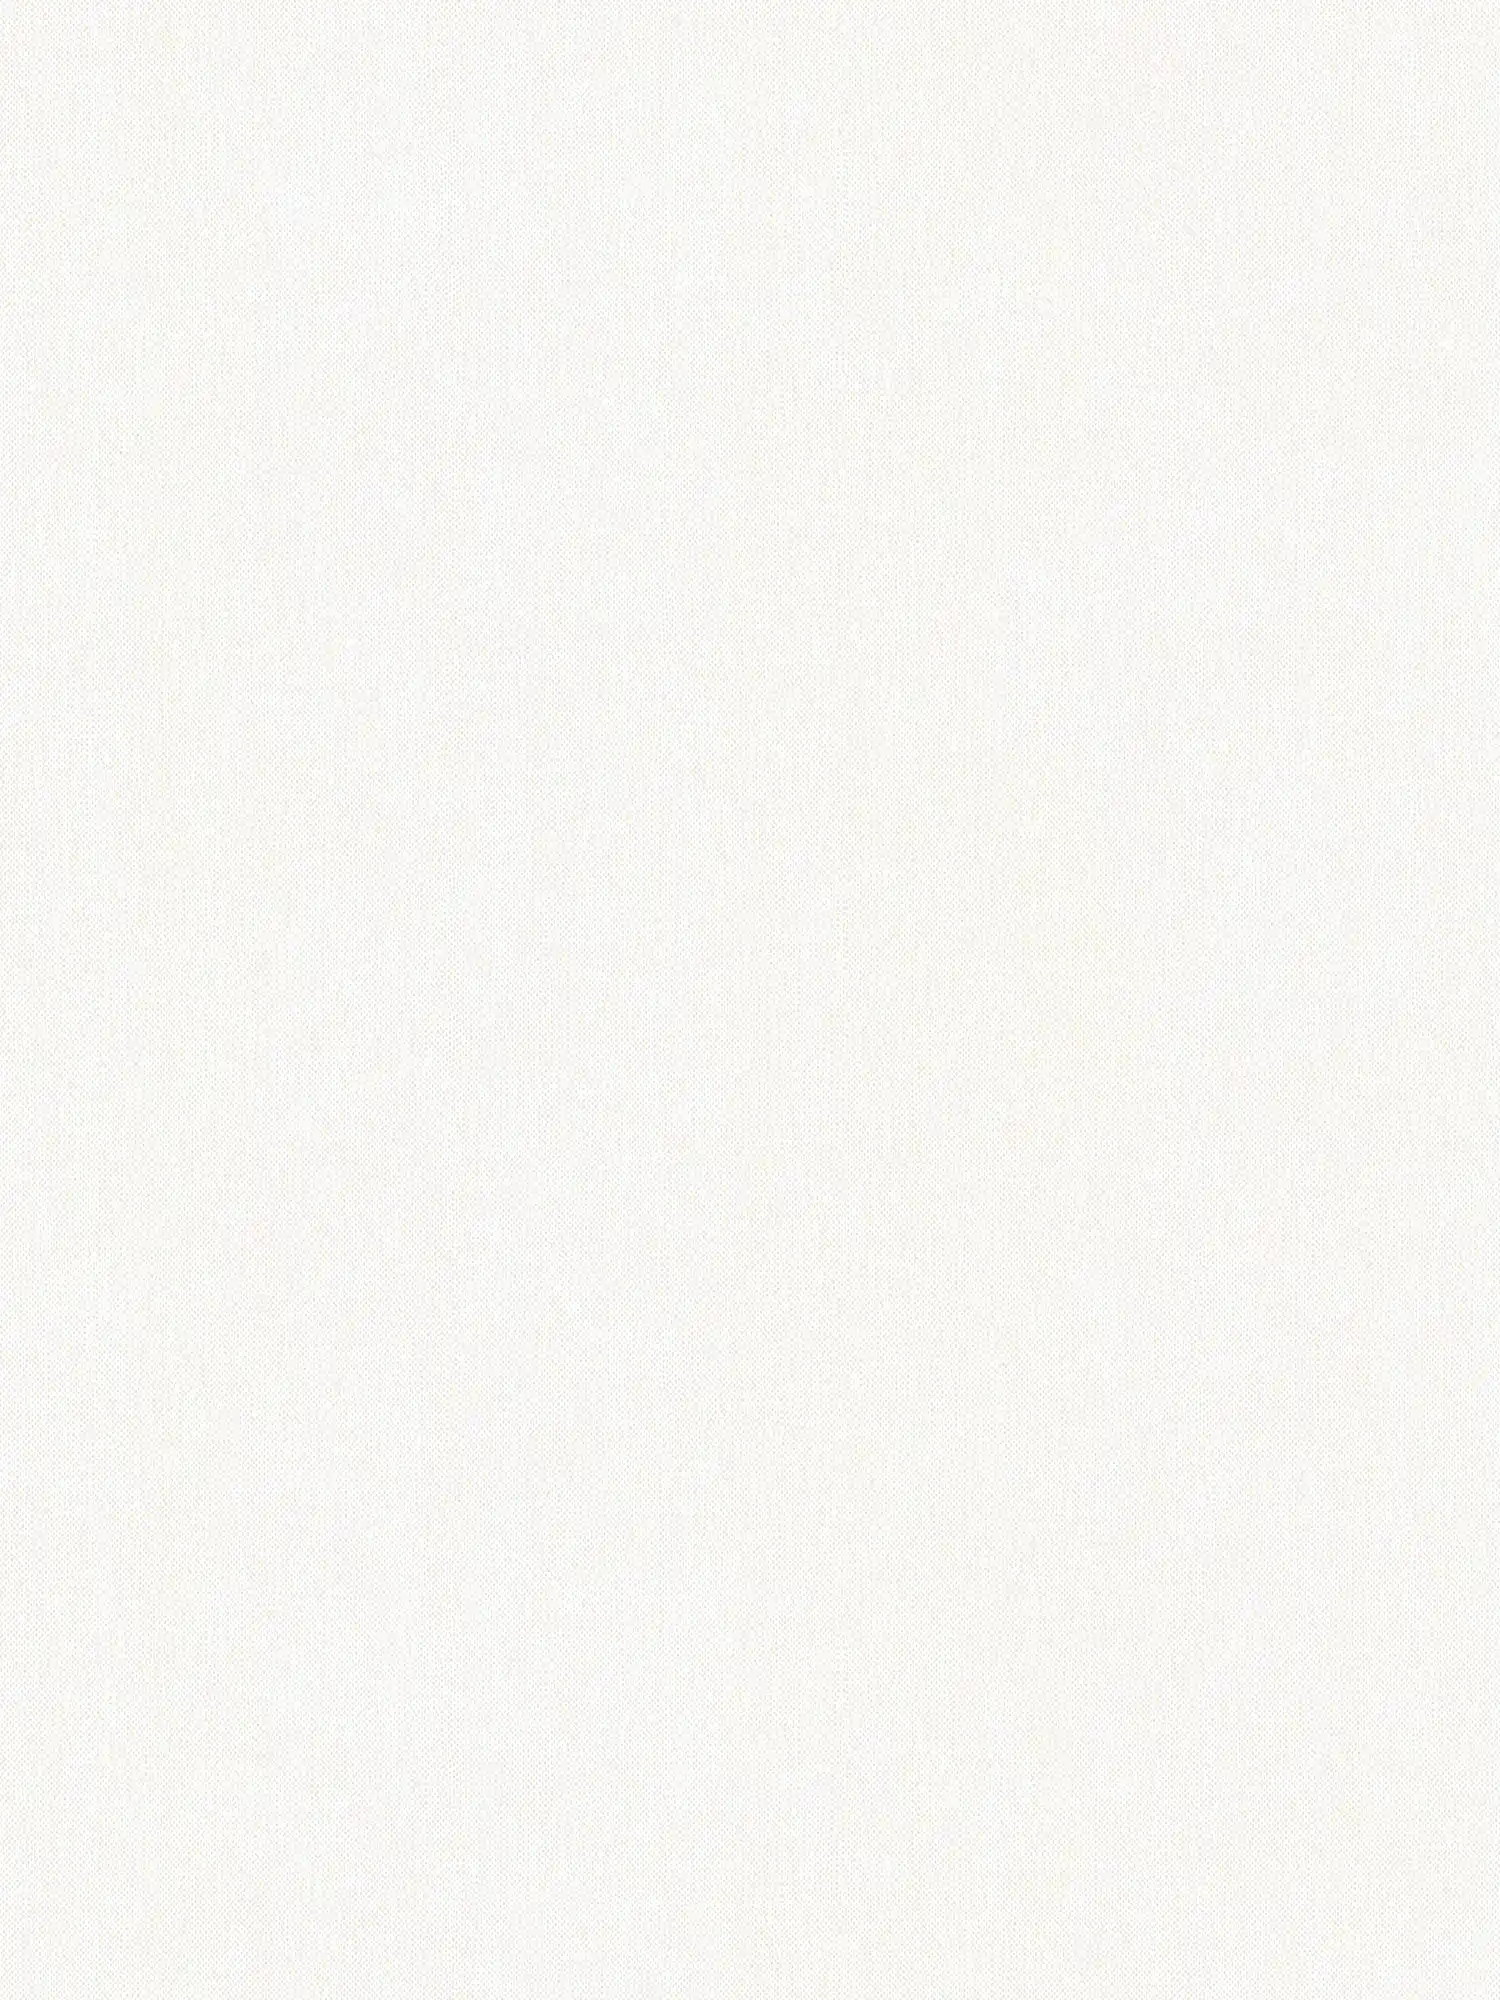 Carta da parati liscia chiara, opaca, bianca con struttura in lino
